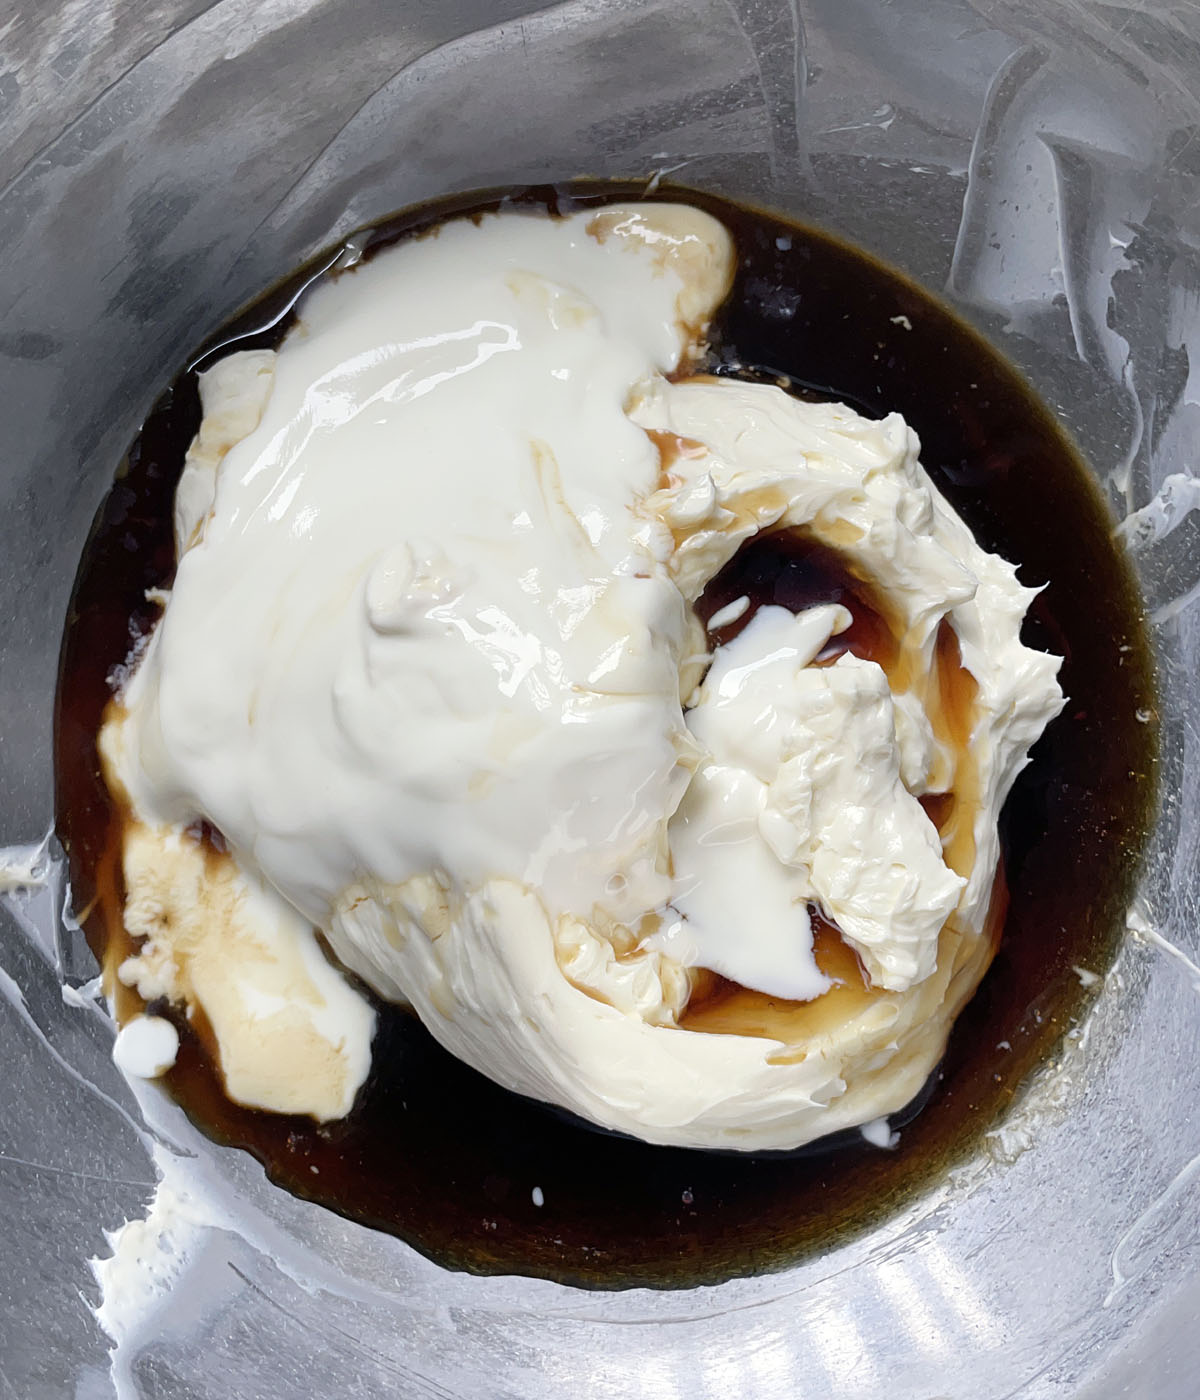 A metal bowl containing beaten white cream cheese, white yogurt, and brown liquid.